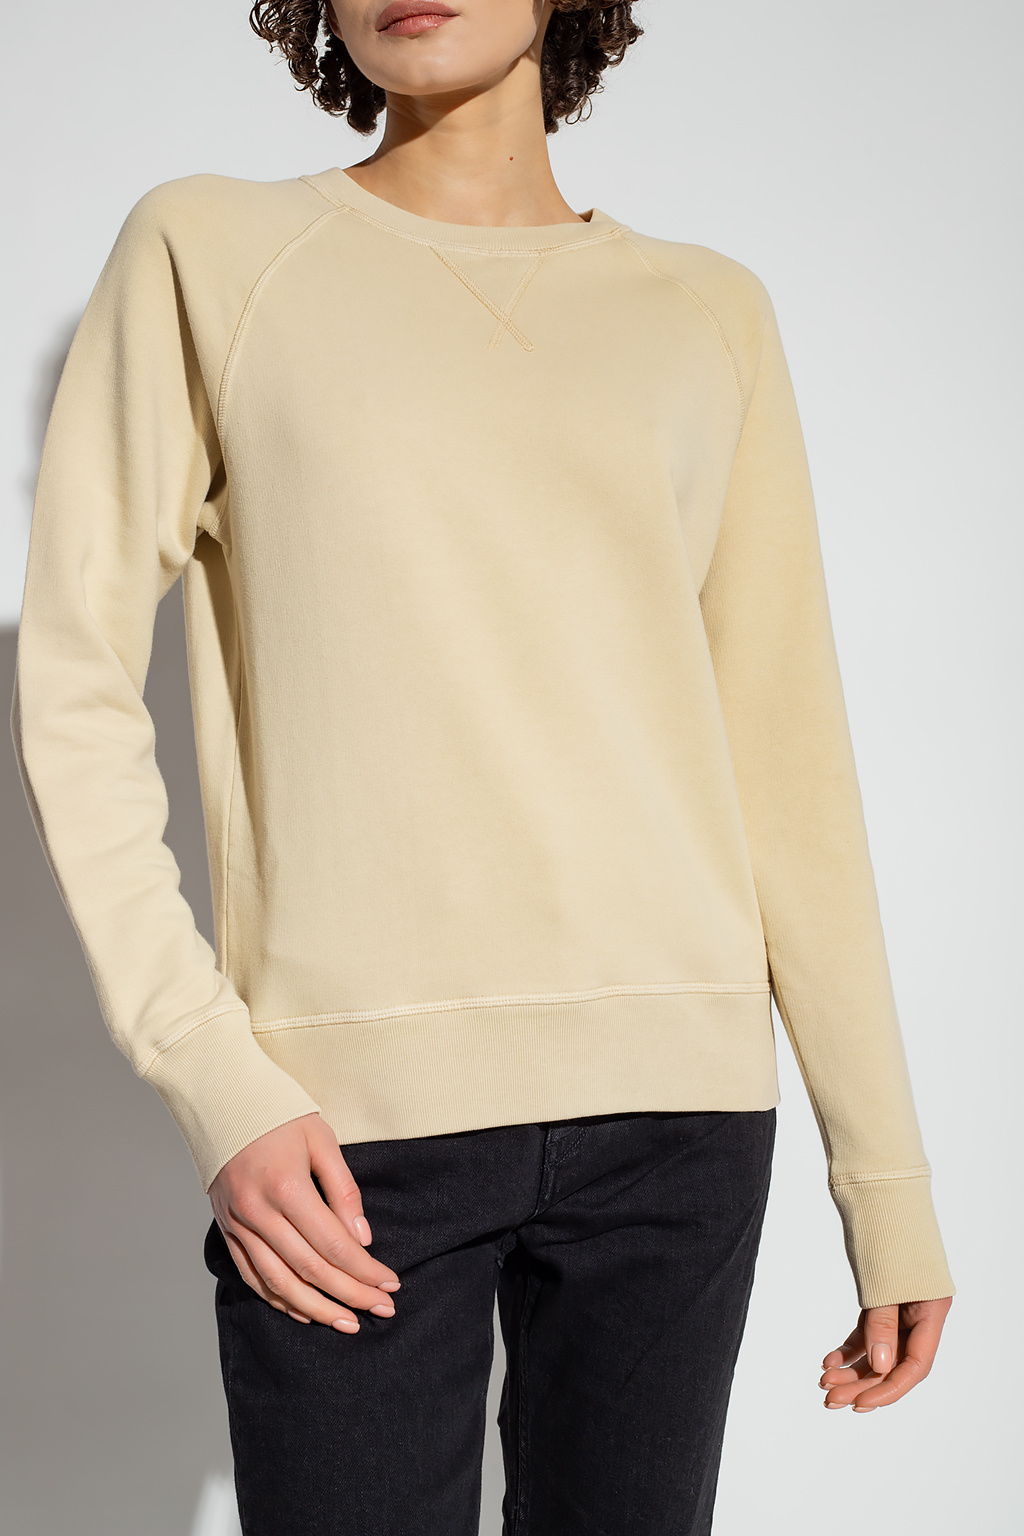 Golden Goose Printed sweatshirt